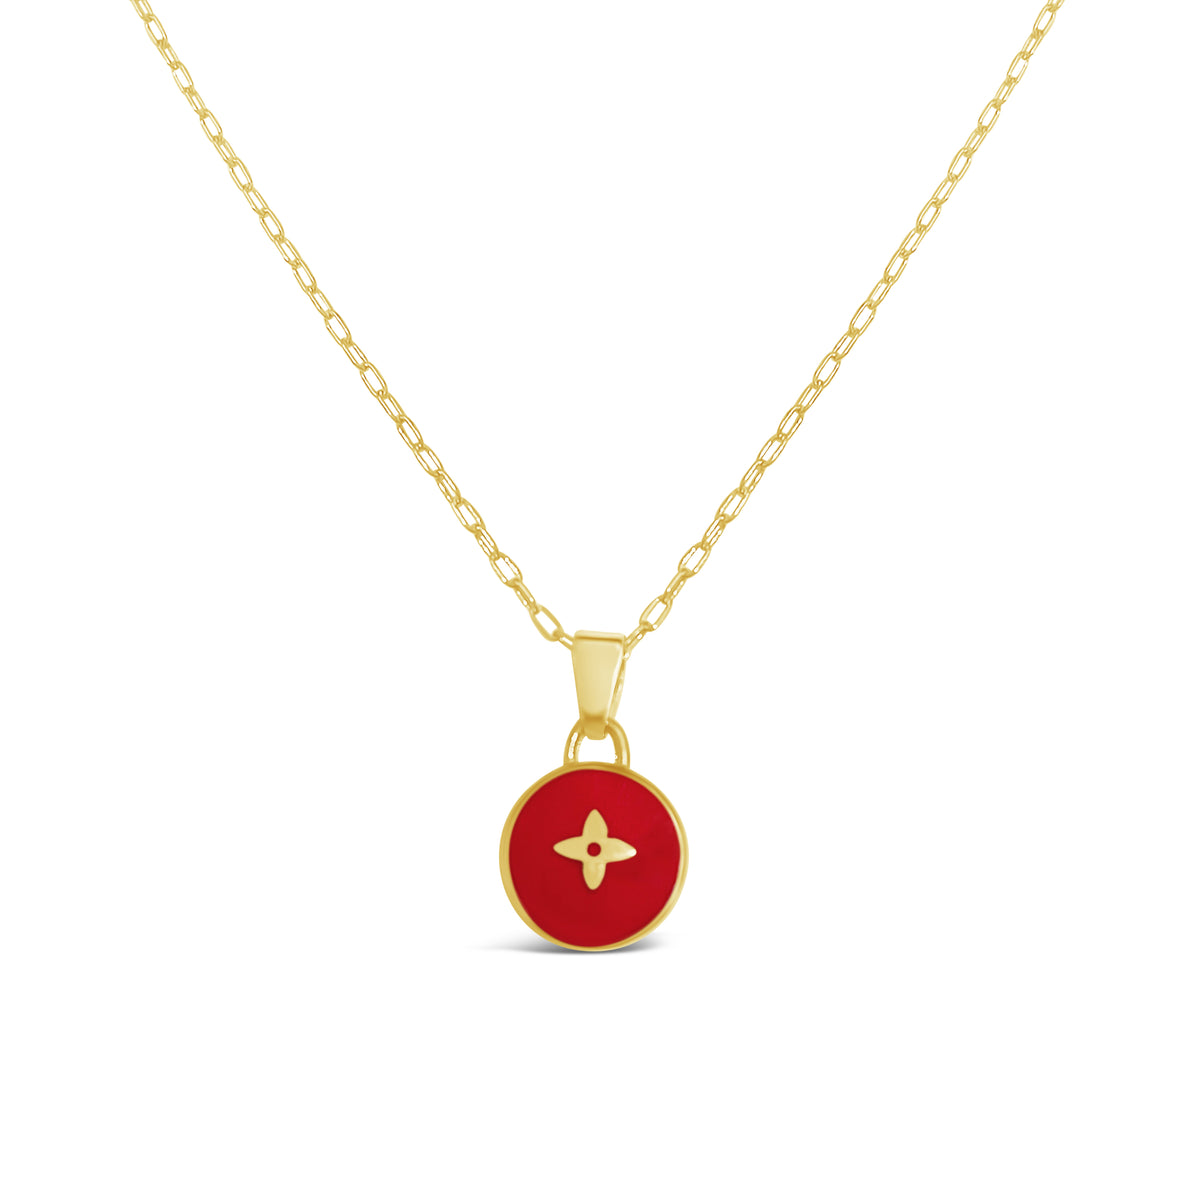 Rework Vintage Louis Vuitton Pastilles Gold Heart Necklace – Relic the Label